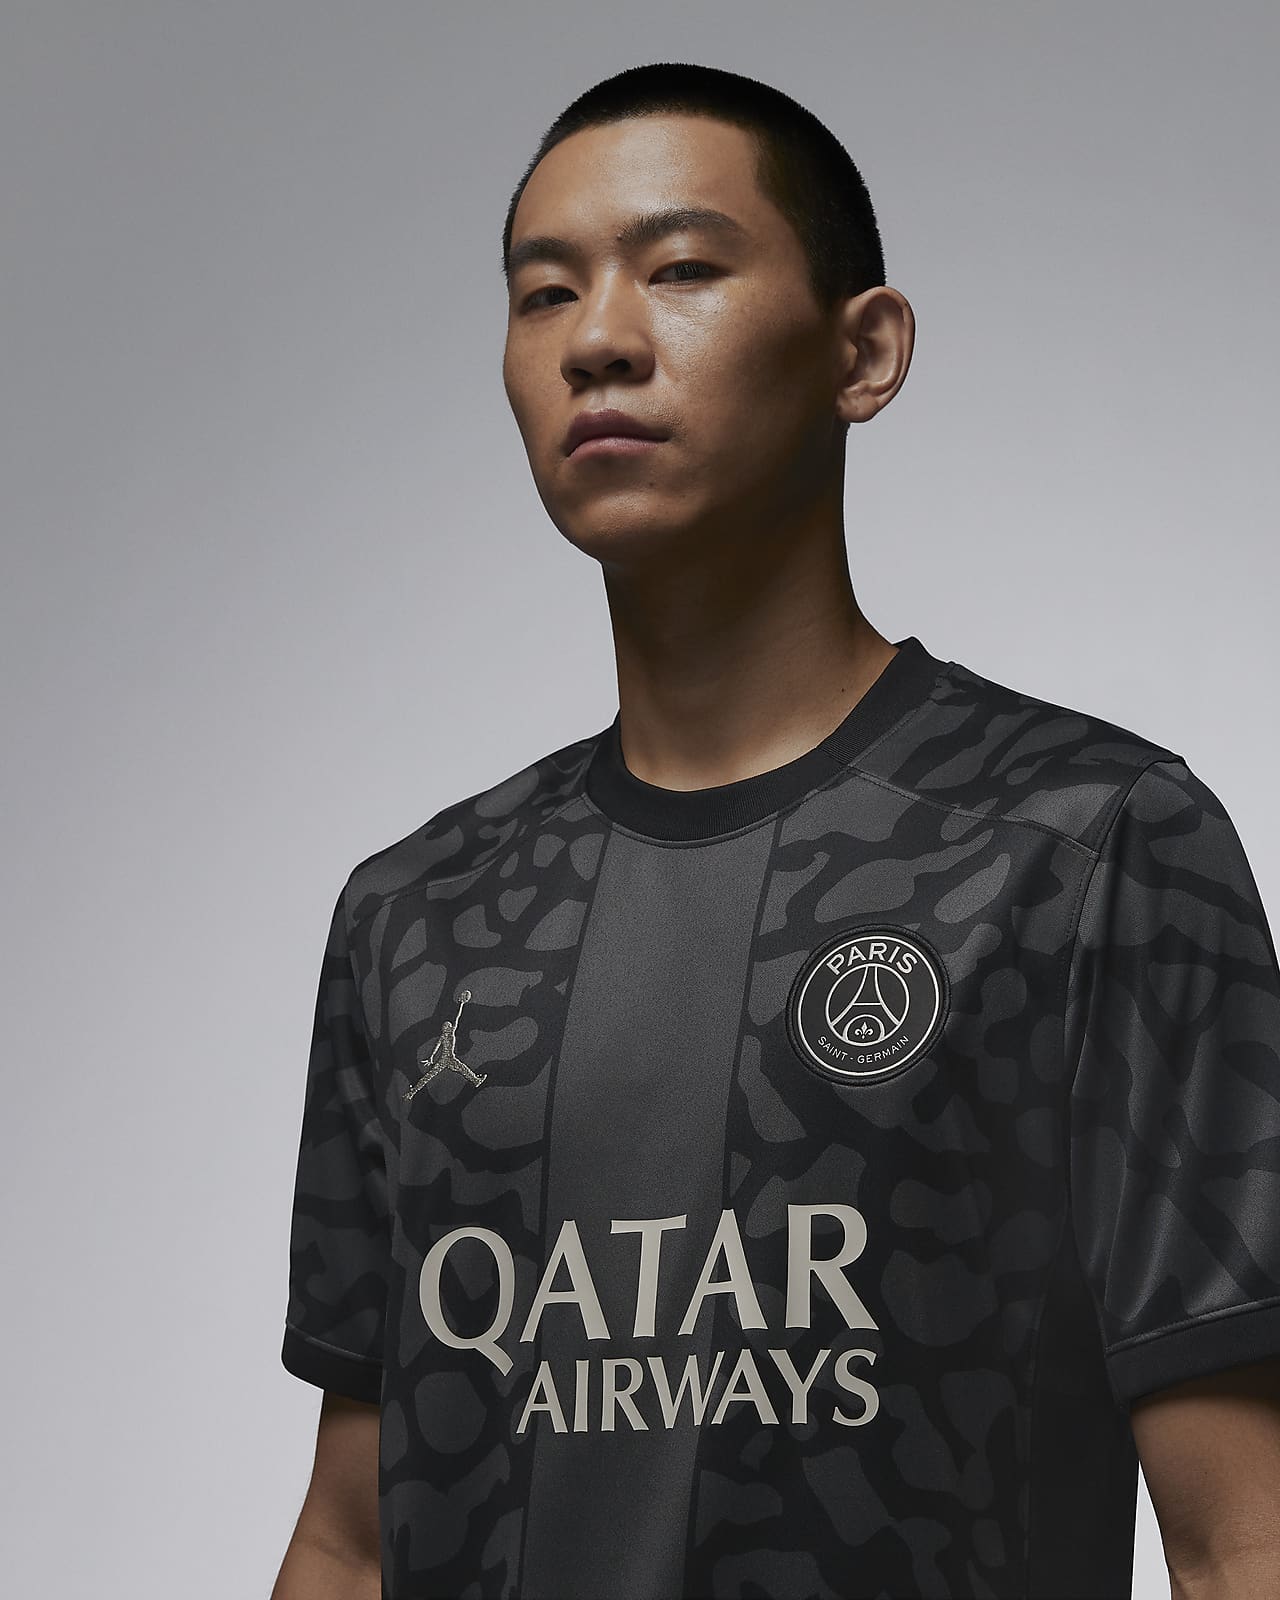 PSG Jordan Kits, Paris Saint-Germain Jordan Gear, Jerseys, Shirts